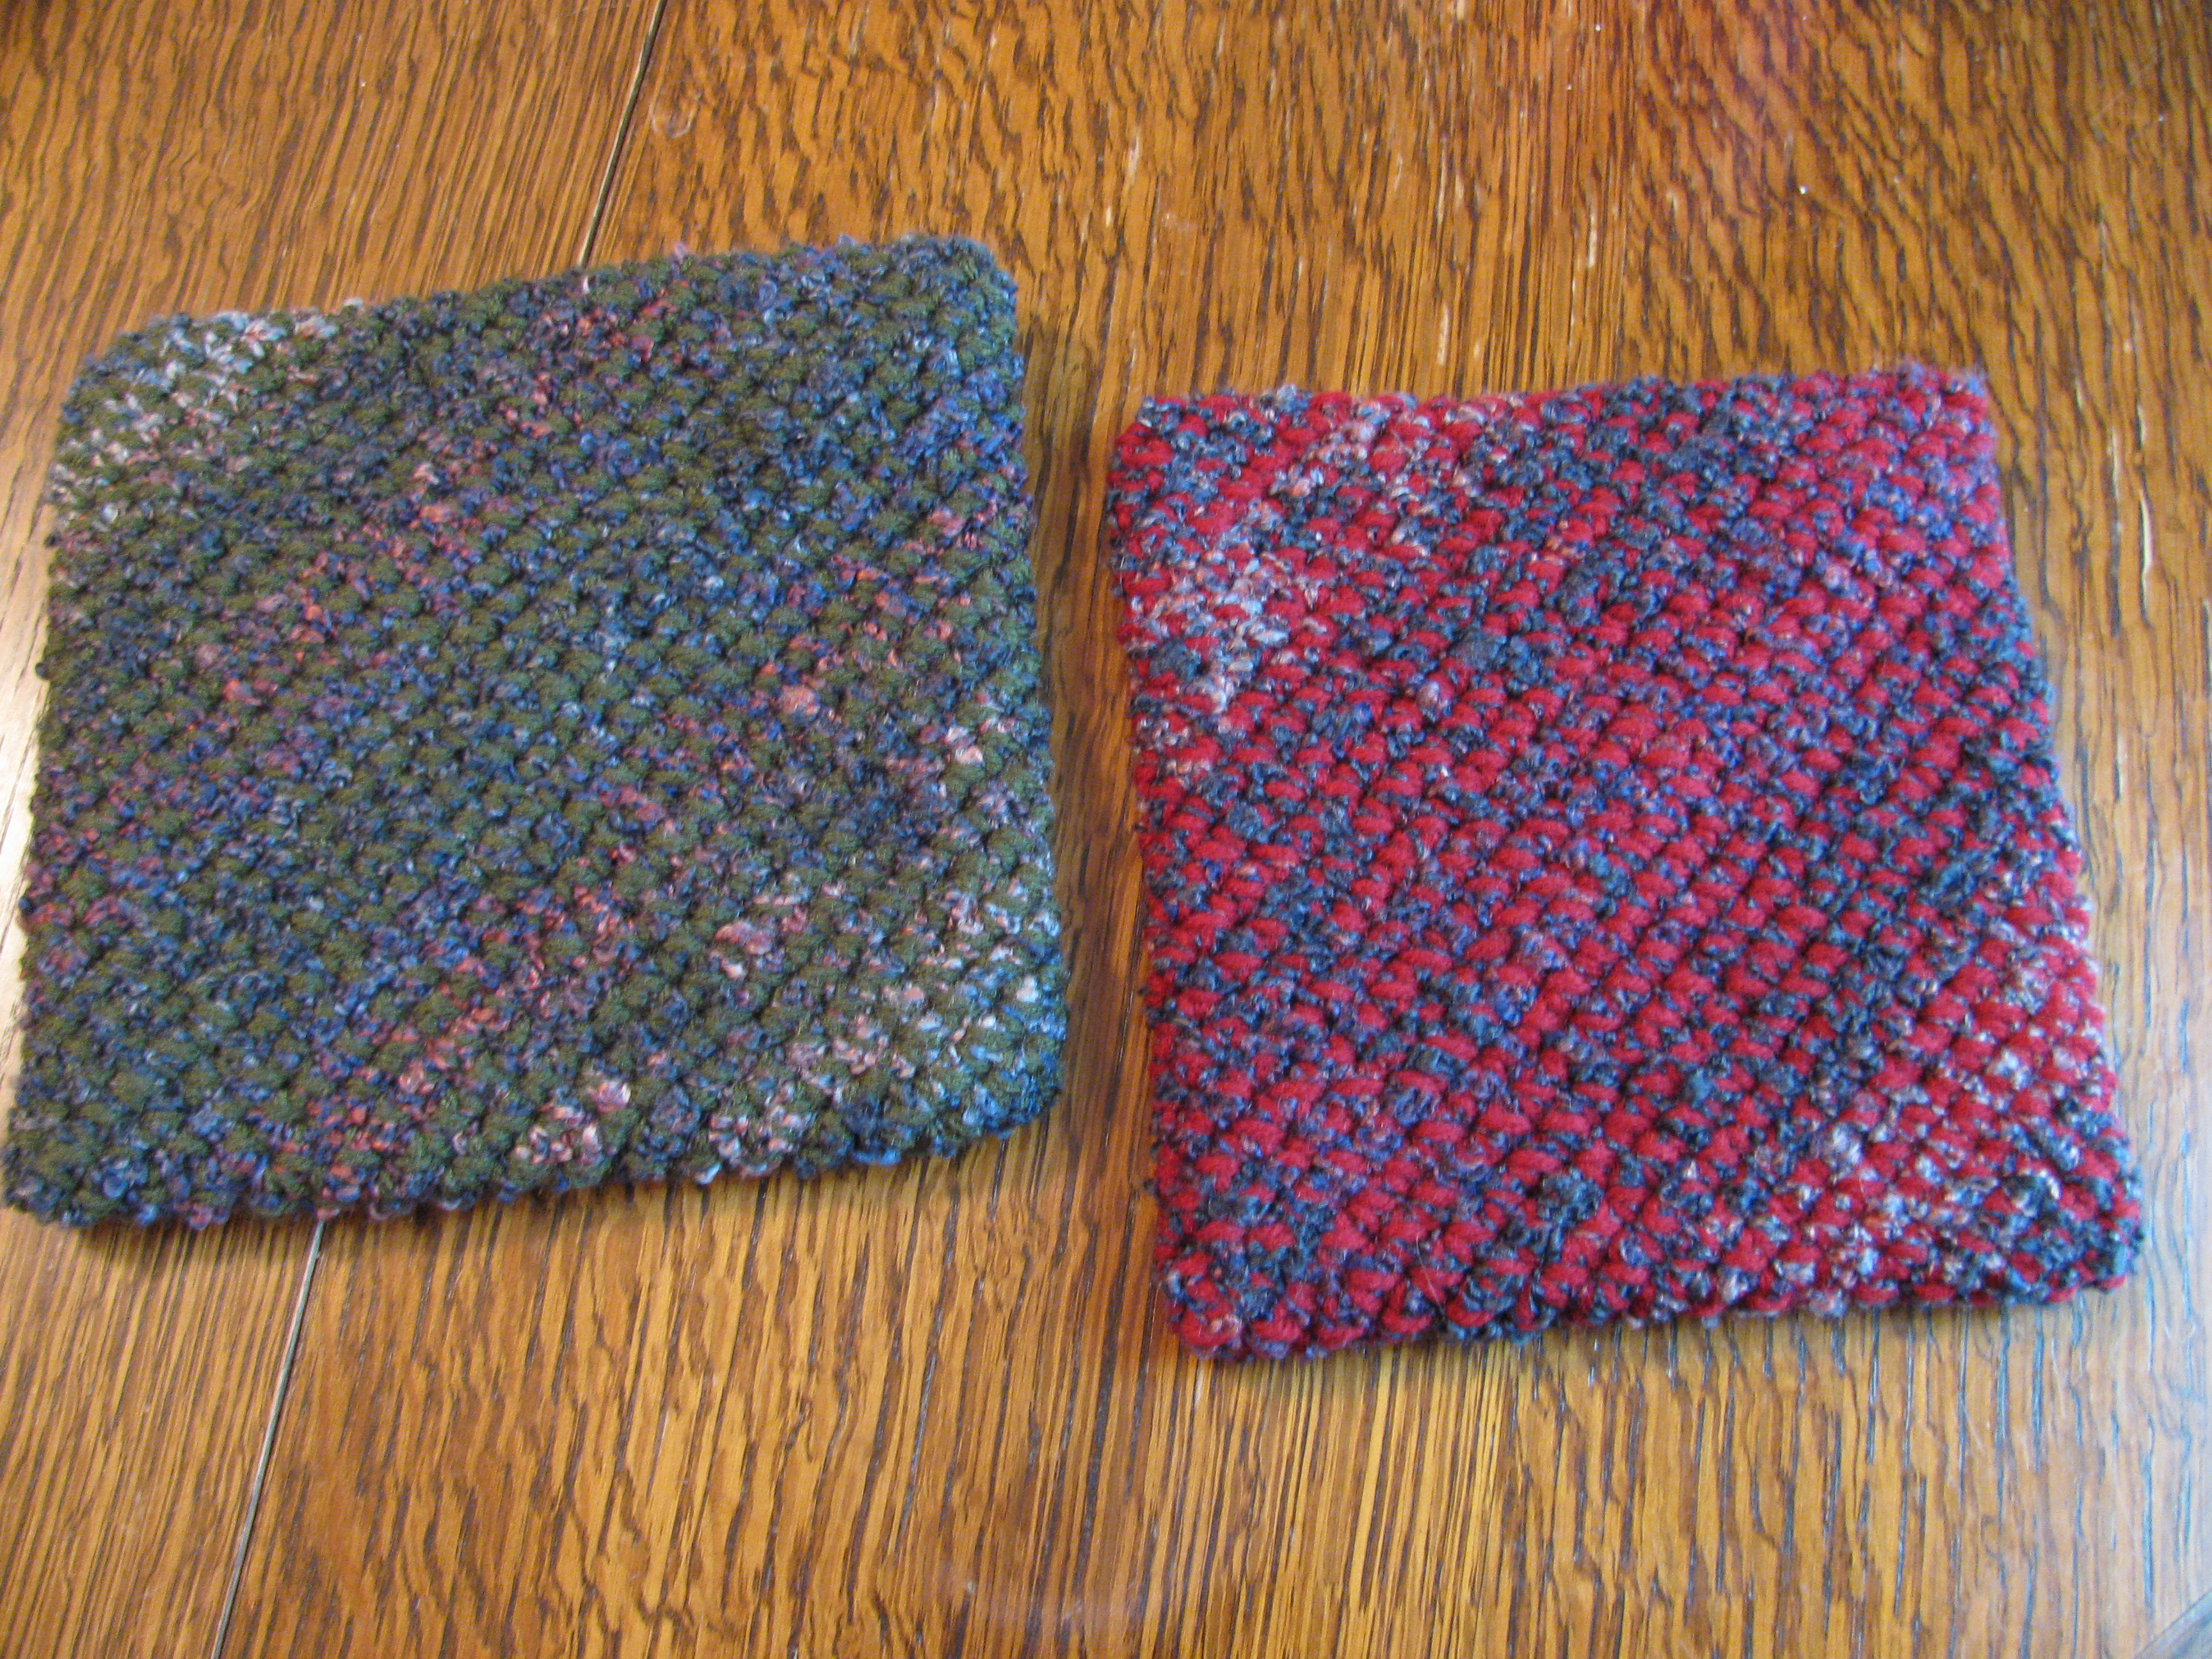 Free Crochet Potholder Patterns The Best Potholders Ever Aberrant Crochet Tm